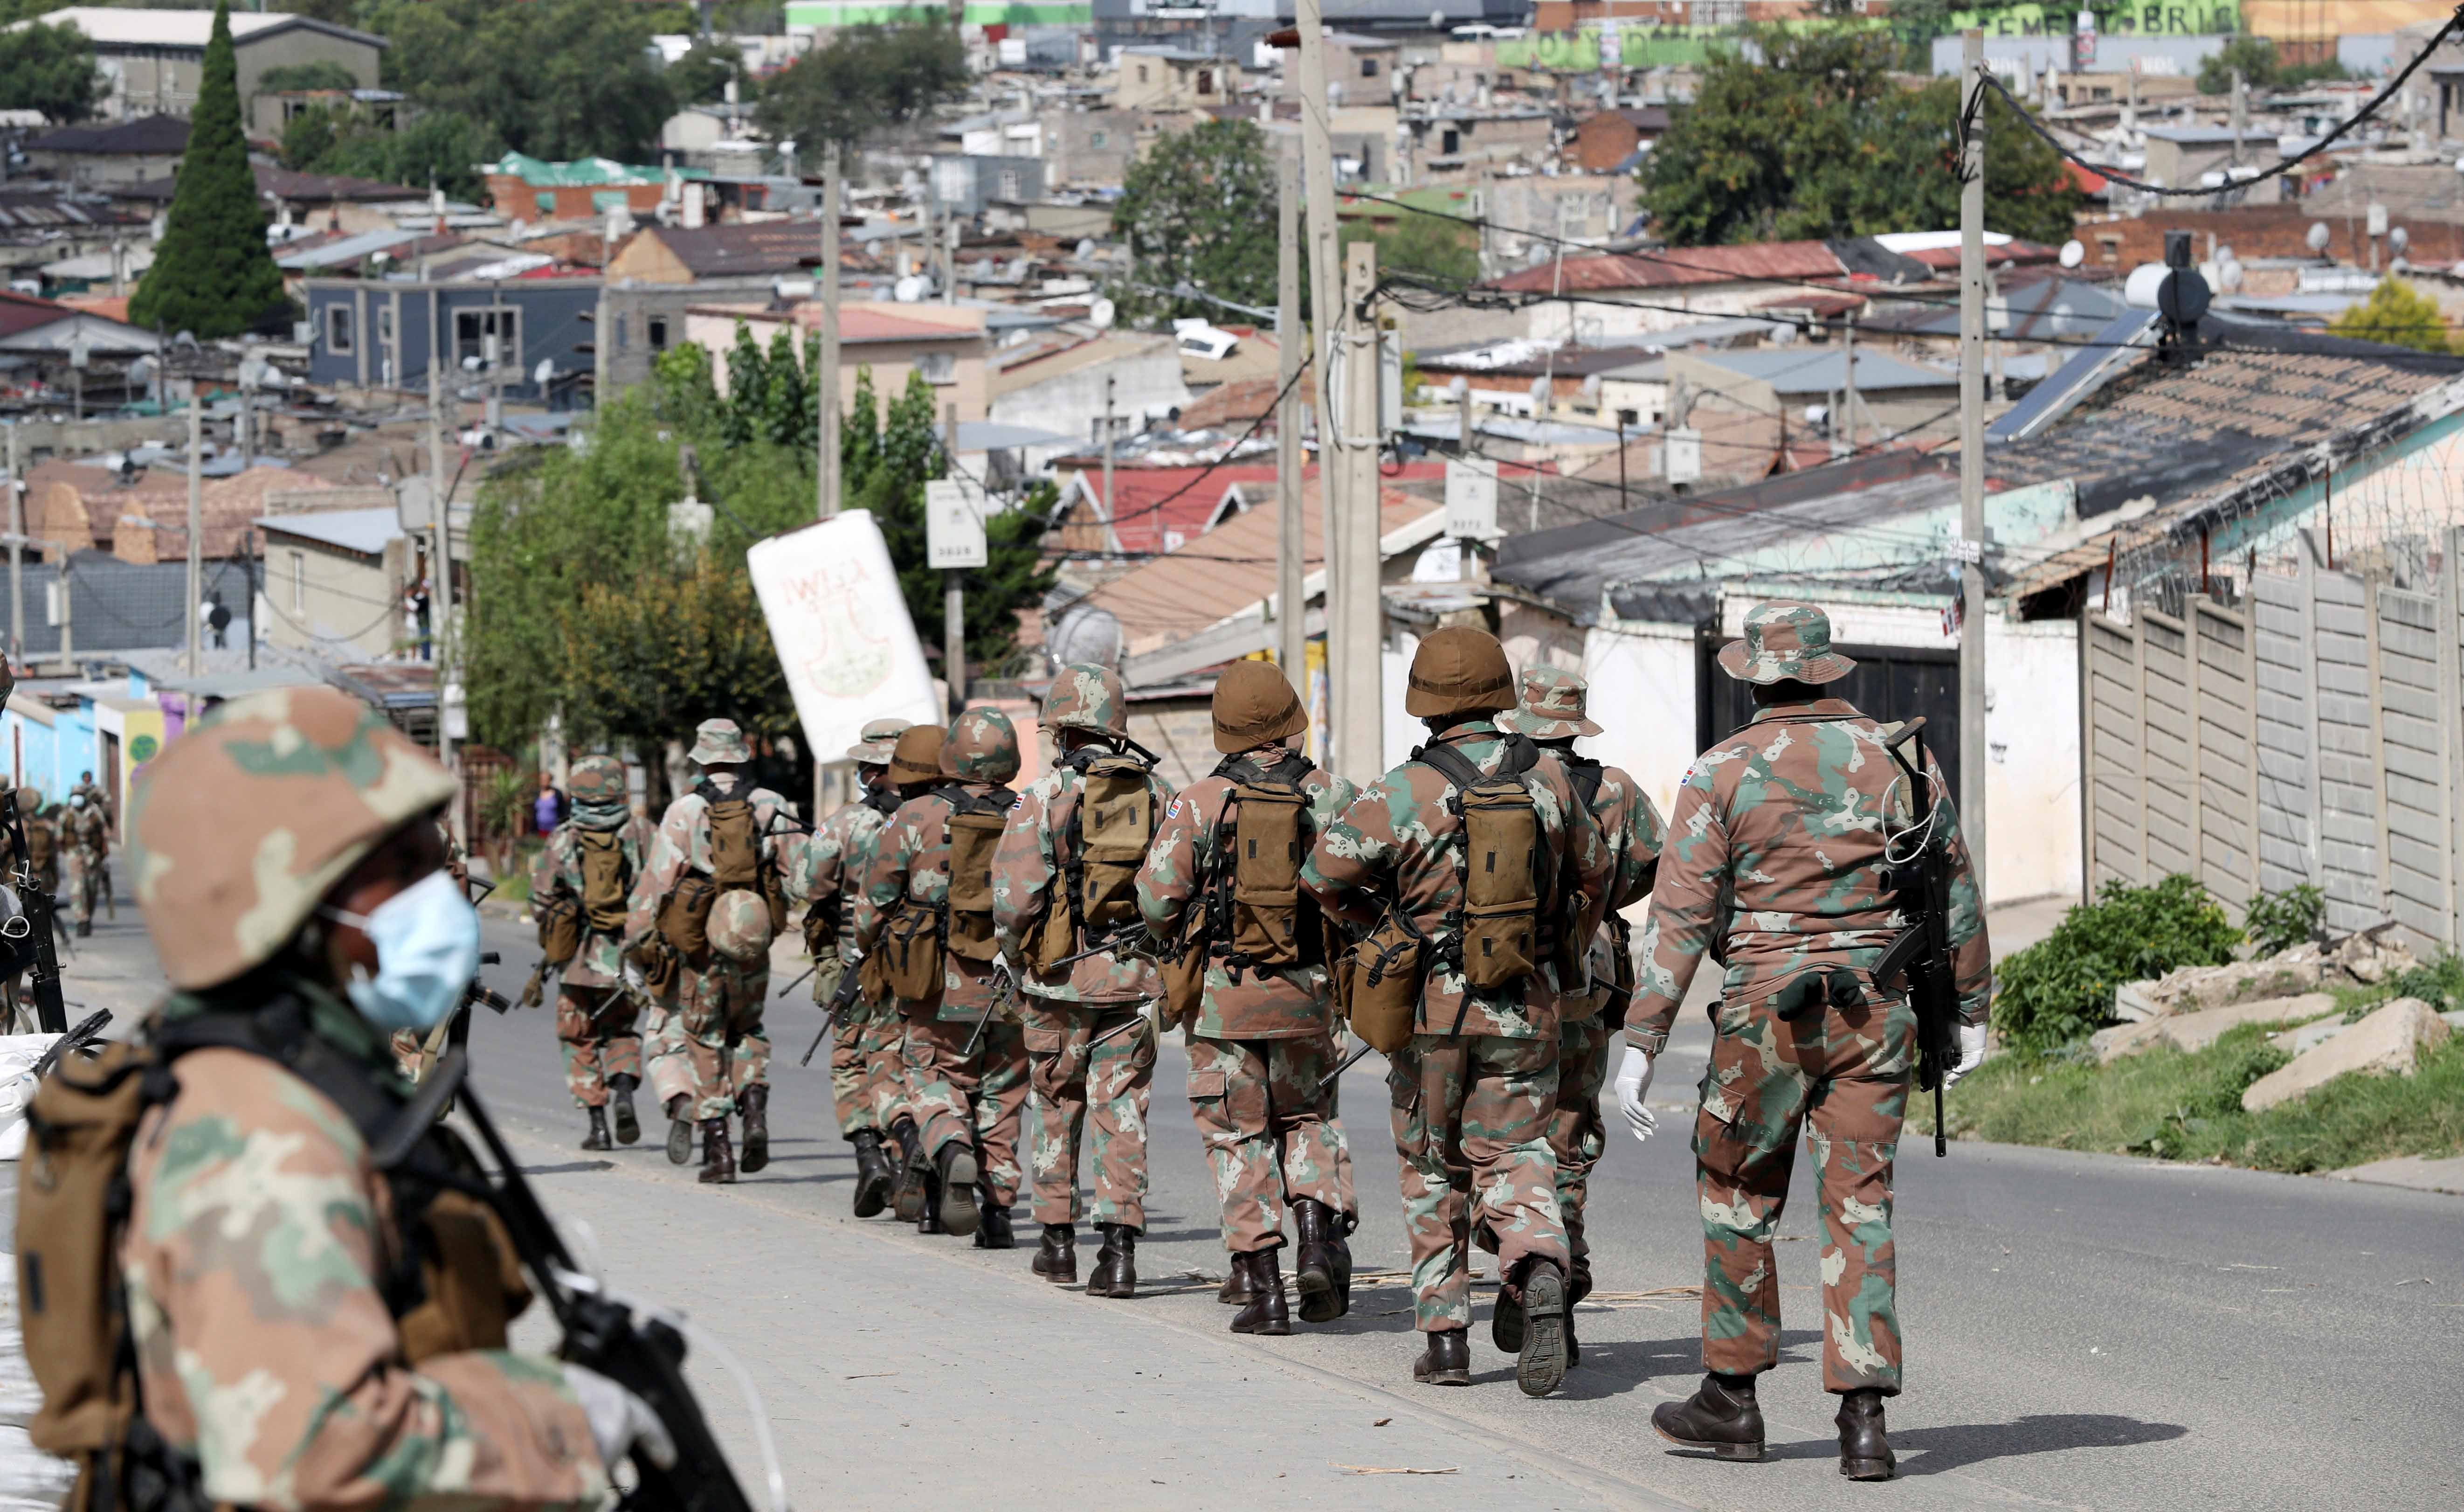 جنود في دورية في الشوارع في محاولة لفرض إغلاق في كافة أنحاء البلاد بهدف الحد من انتشار فيروس "كورونا"، بلدة ألكسندرا، جنوب أفريقيا، 28 مارس/آذار 2020.